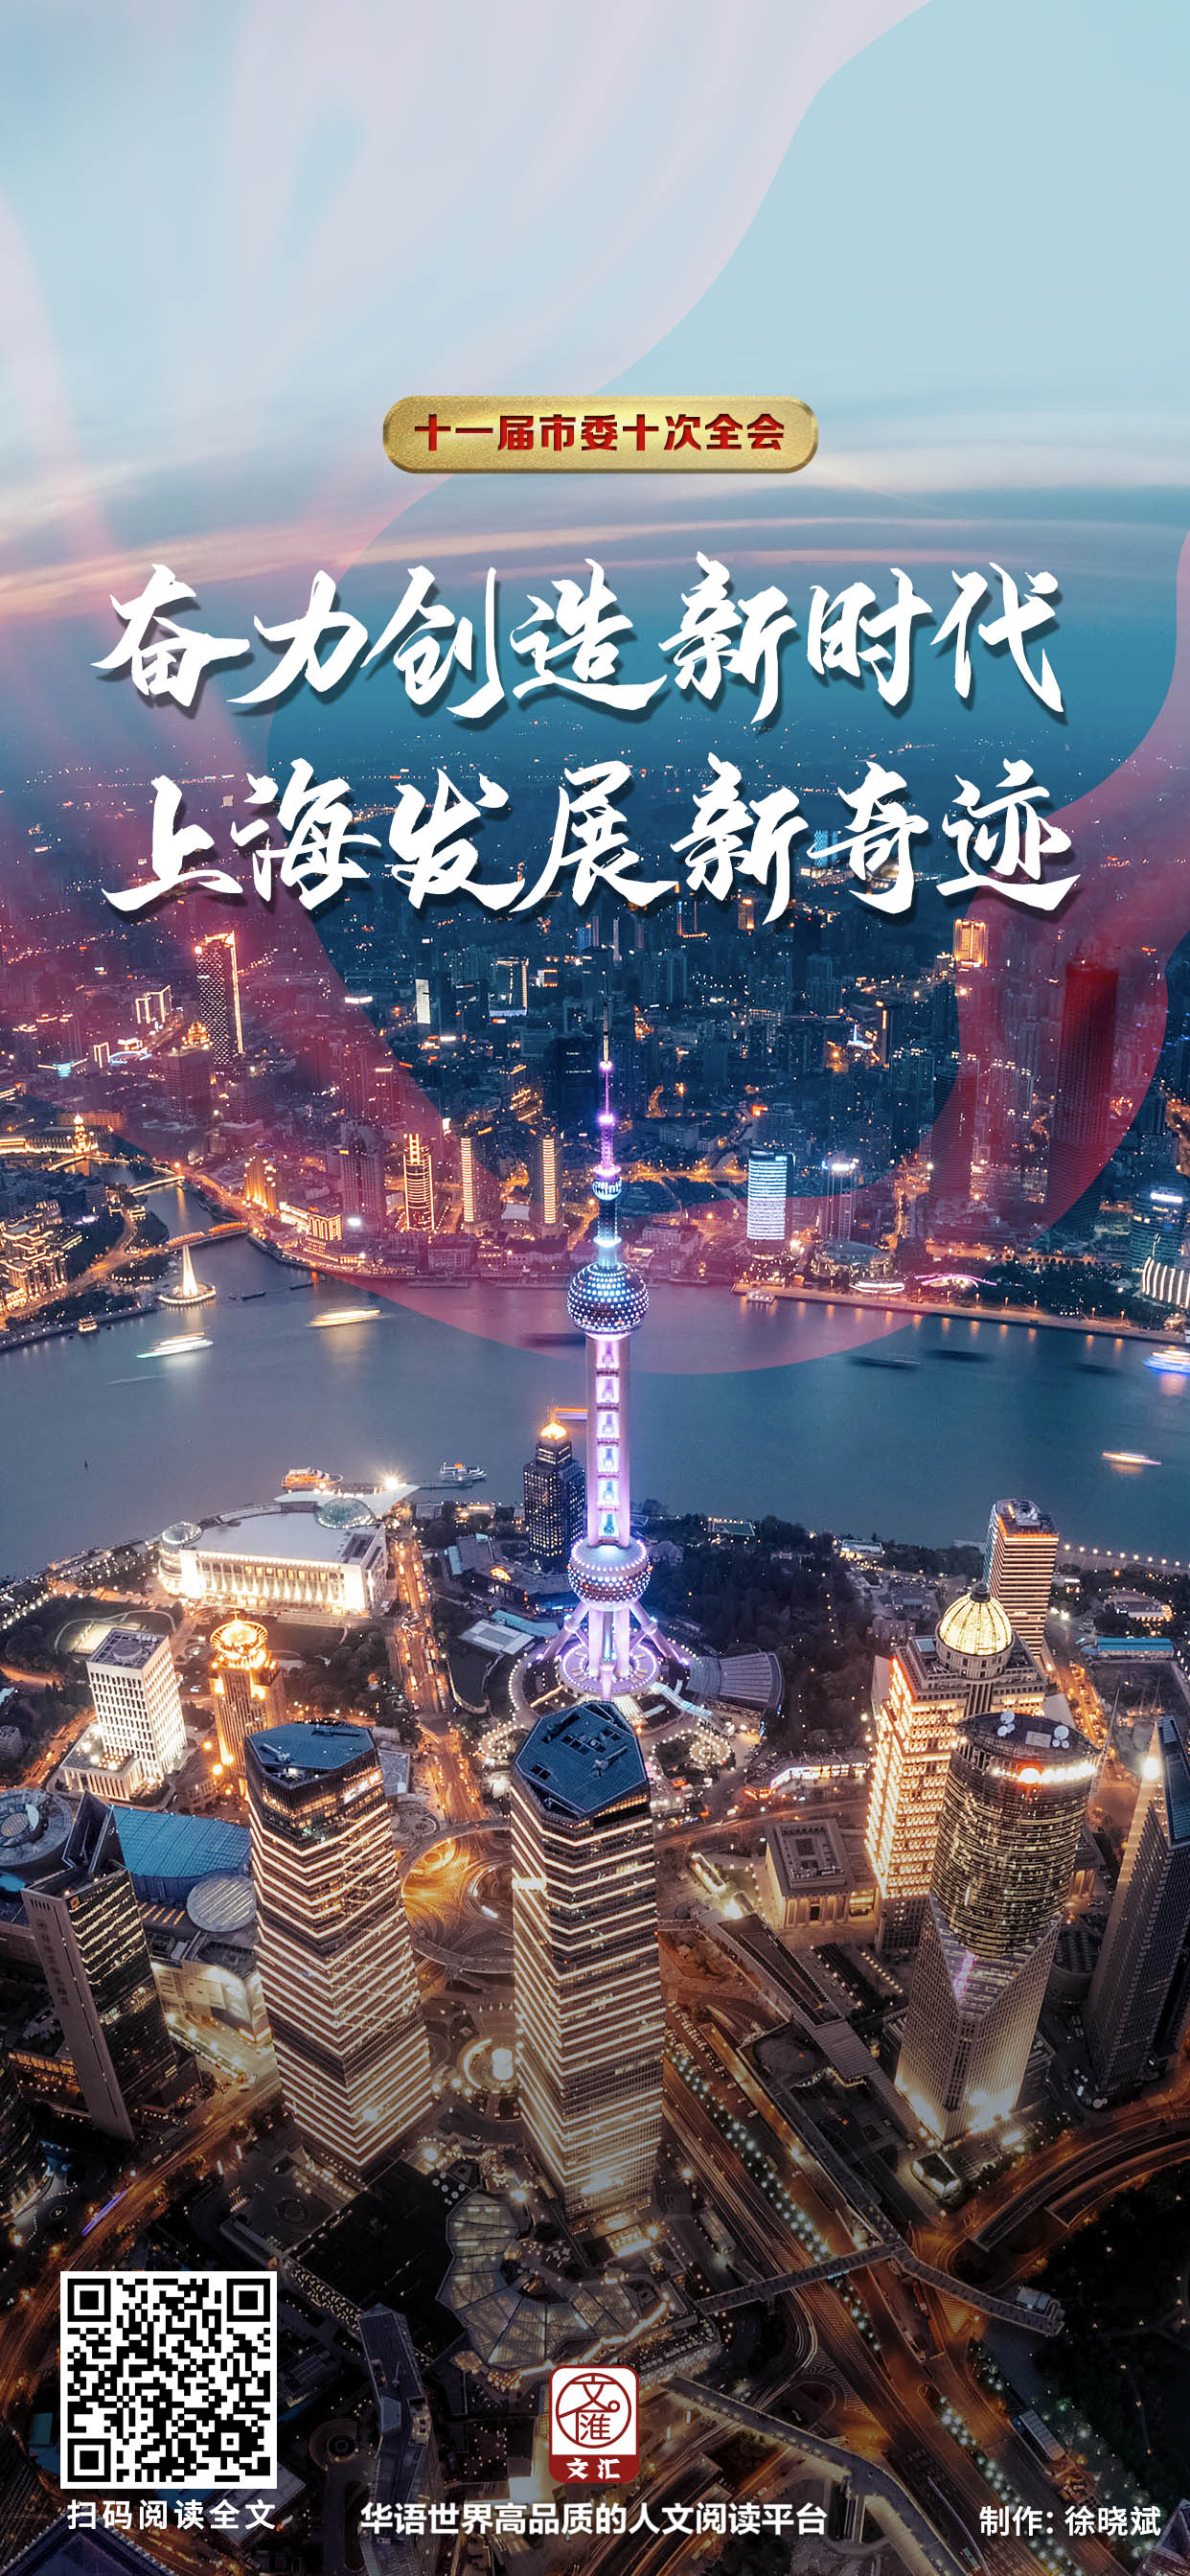 文汇报评论员:奋力创造新时代上海发展新奇迹